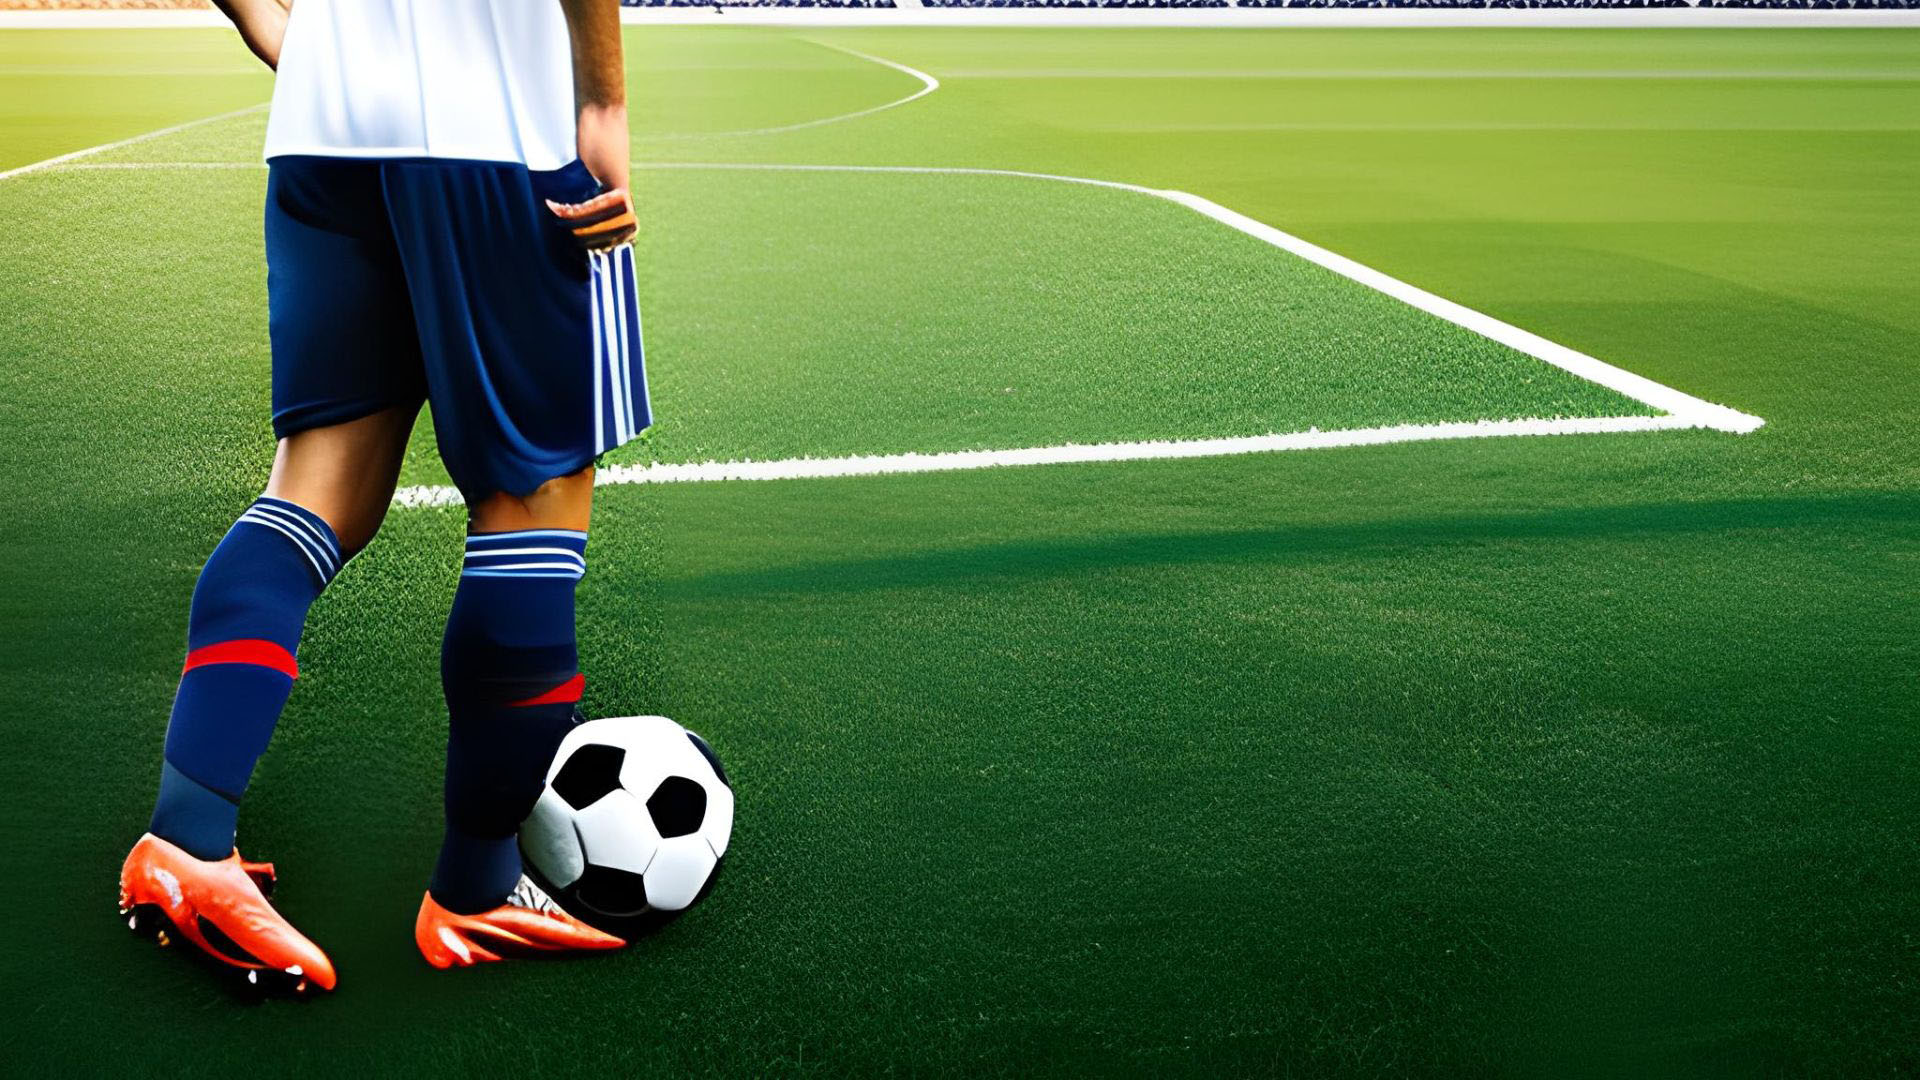 【サッカー】意識することでドリブルが上達した6つのポイントと練習方法